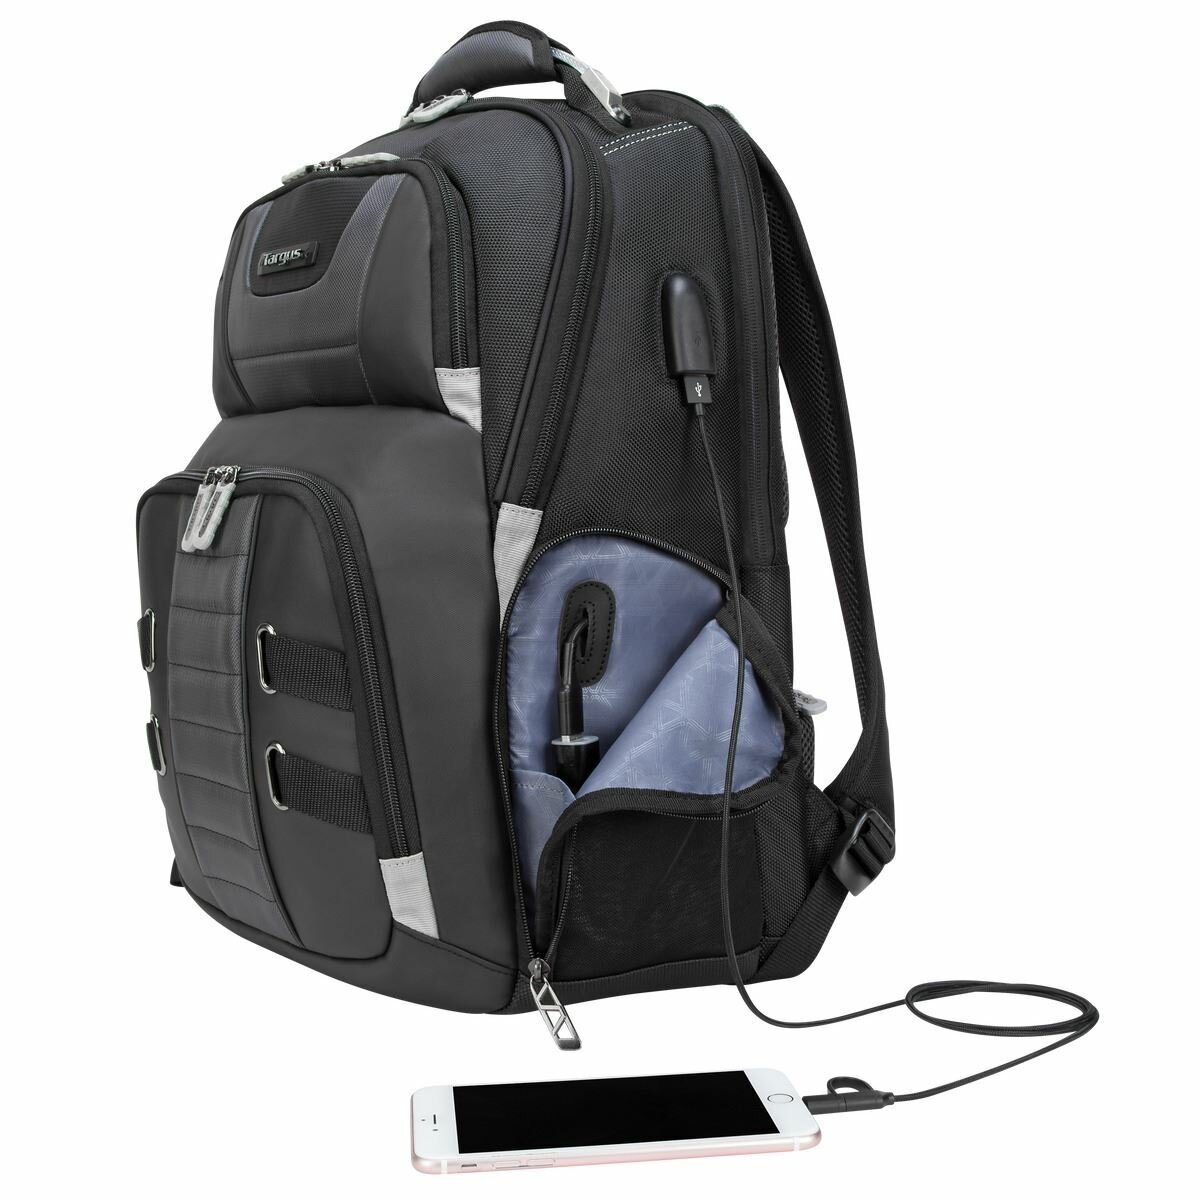 Plecak na laptopa Targus DrifterTrek 11,6-15,6 czarny od boku z podłączonym kablem do smartfona na białym tle